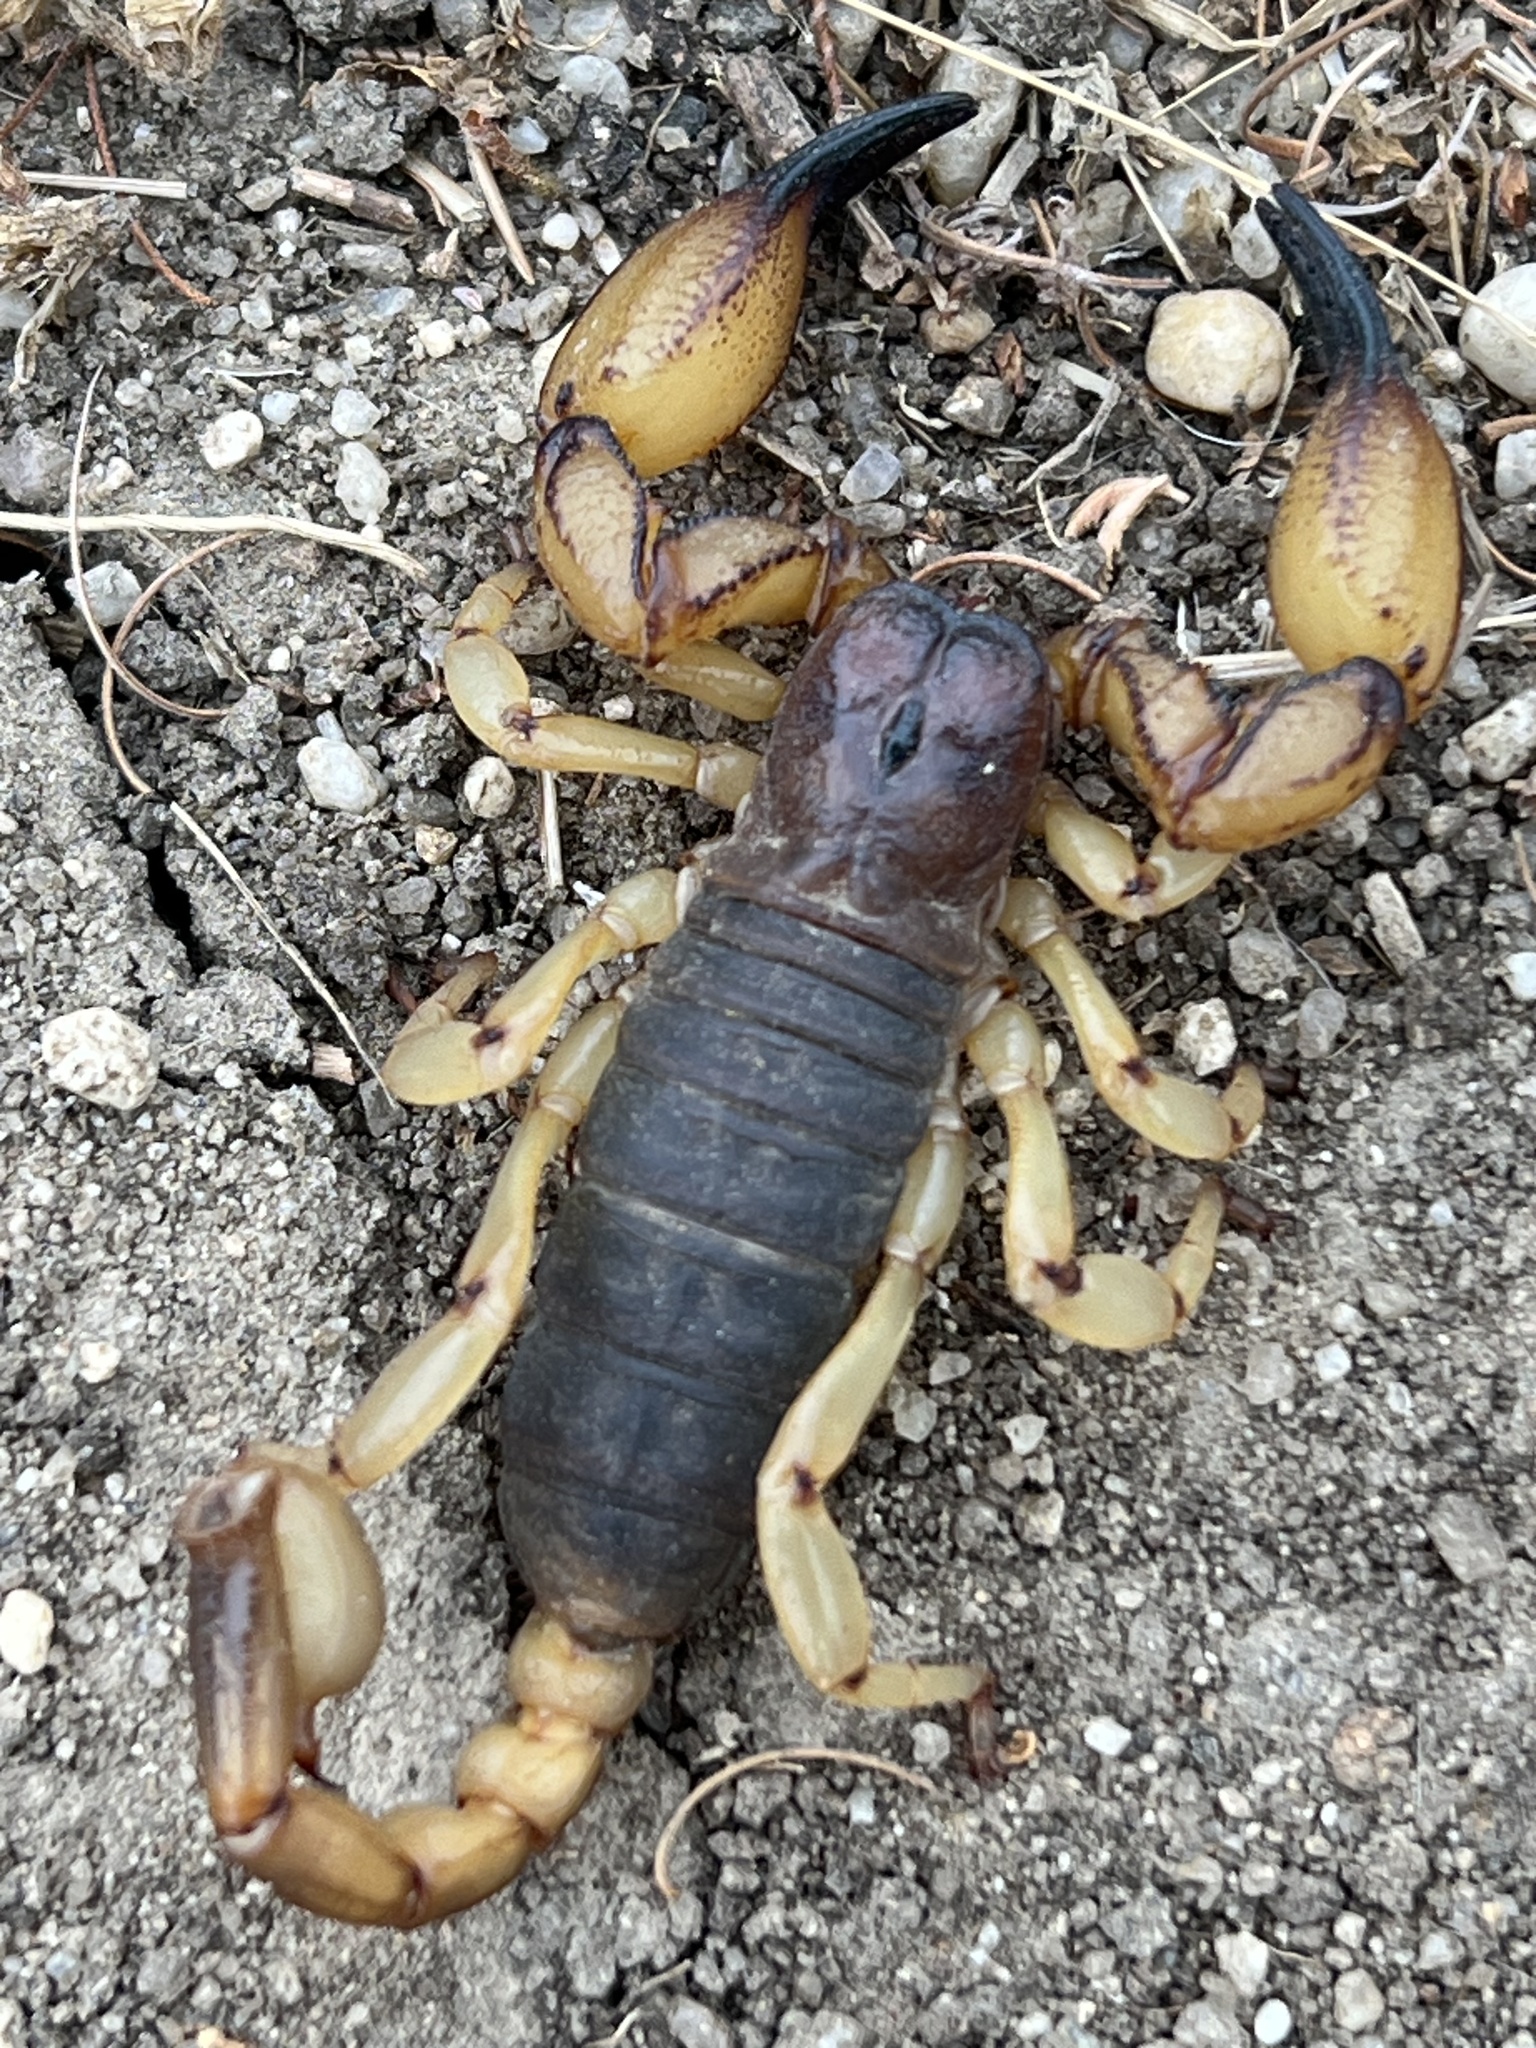 16 - Scorpion